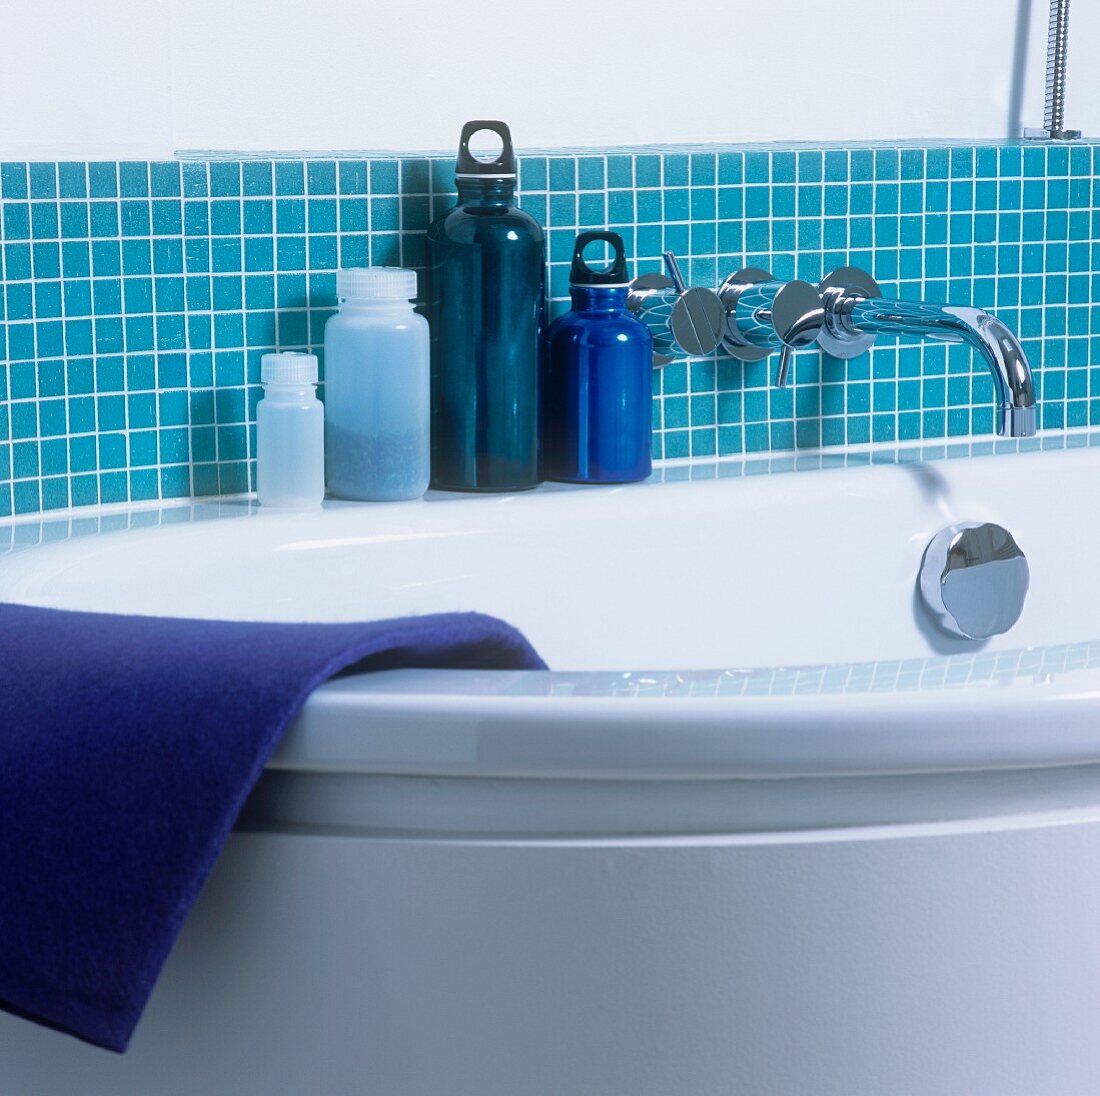 Ausschnitt einer Badewanne mit blauen Behältern vor blauen Fliesen an Wand